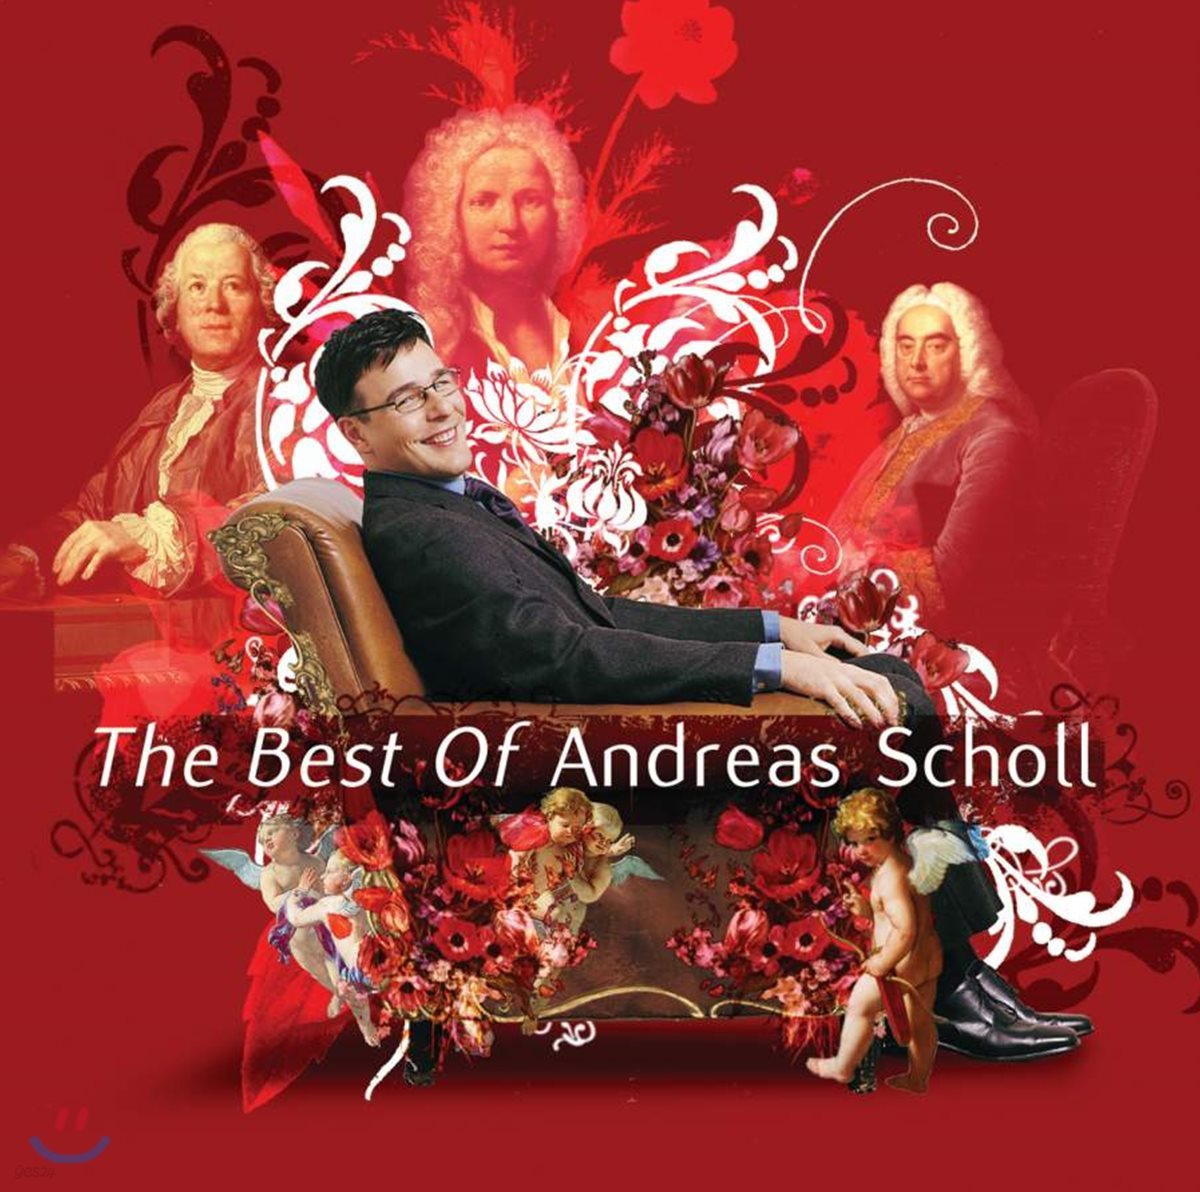 안드레아스 숄 베스트 (The Best Of Andreas Scholl)